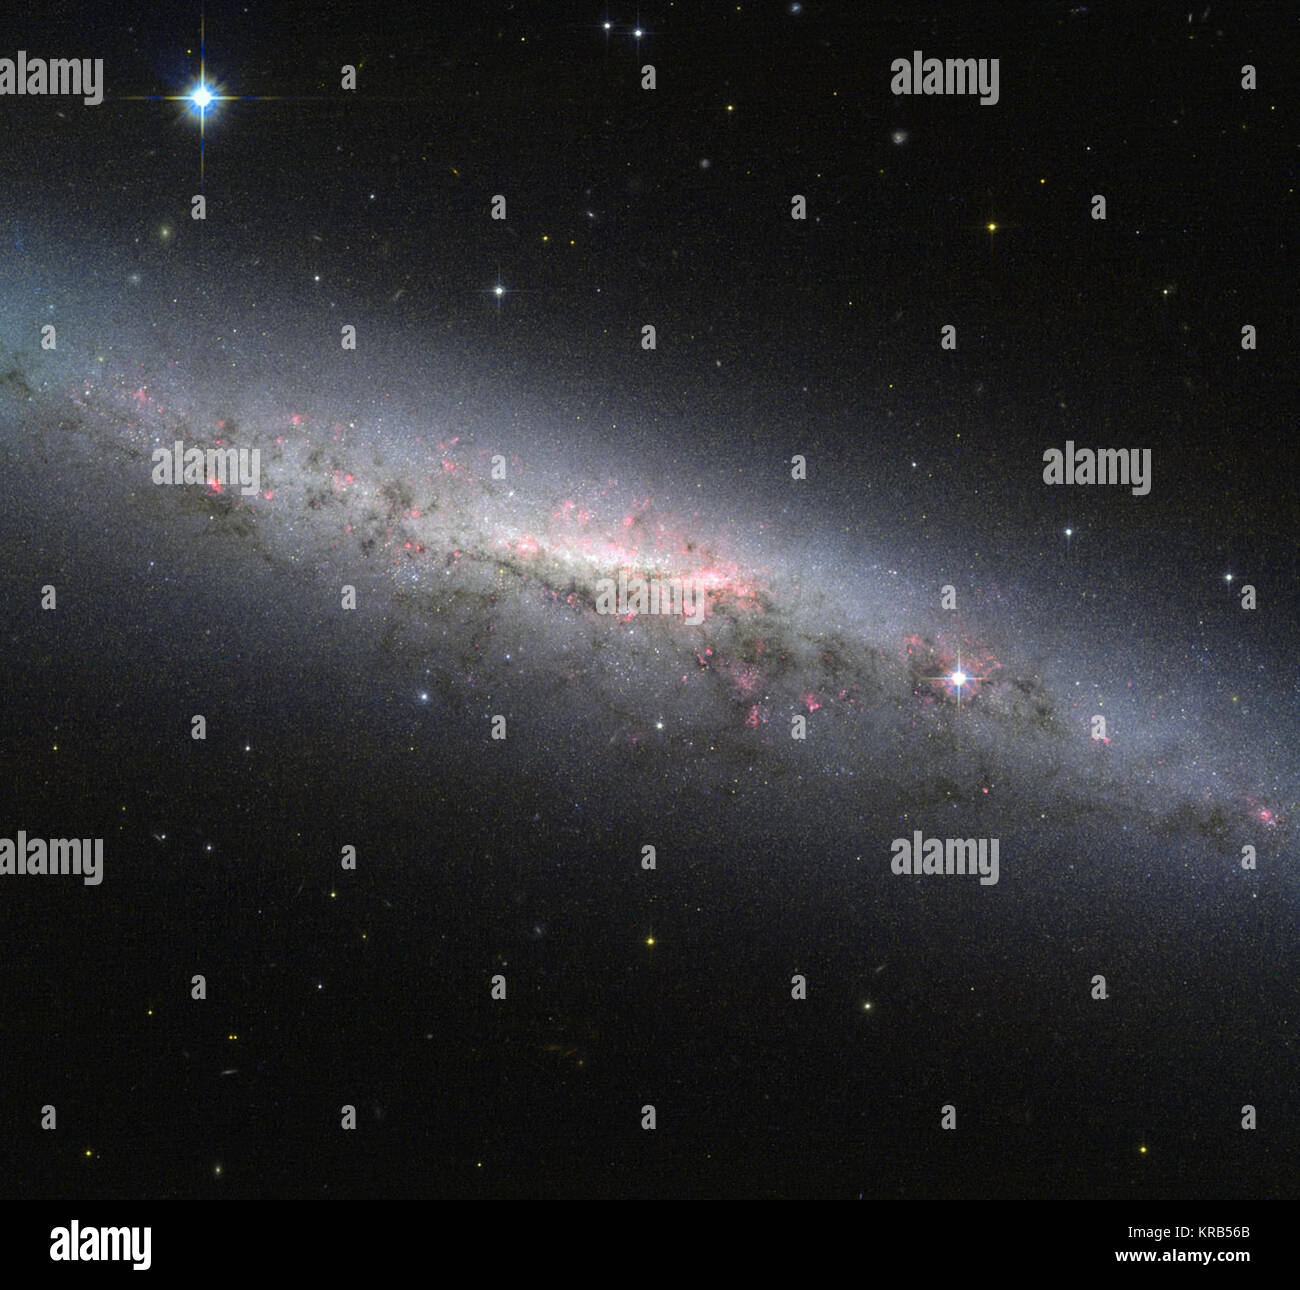 Cette image montre une vue magnifique de la galaxie NGC 7090, comme vu par la NASA/ESA Hubble Space Telescope. La galaxie est vue par la tranche depuis la Terre, ce qui signifie que nous ne pouvons pas facilement voir les bras spiraux, qui sont pleins de jeunes étoiles chaudes. Cependant, notre côté-vue sur le disque de la galaxie montre et le renflement central core, où normalement un groupe important de refroidir les vieilles étoiles sont dans un boîtier compact, l'alimentation de la région. En outre, il y a deux fonctionnalités intéressantes présentes dans l'image qui méritent une mention. Premièrement, nous sommes en mesure de distinguer un modèle complexe de régions de couleur rouge sur l'ensemble de la gal Banque D'Images